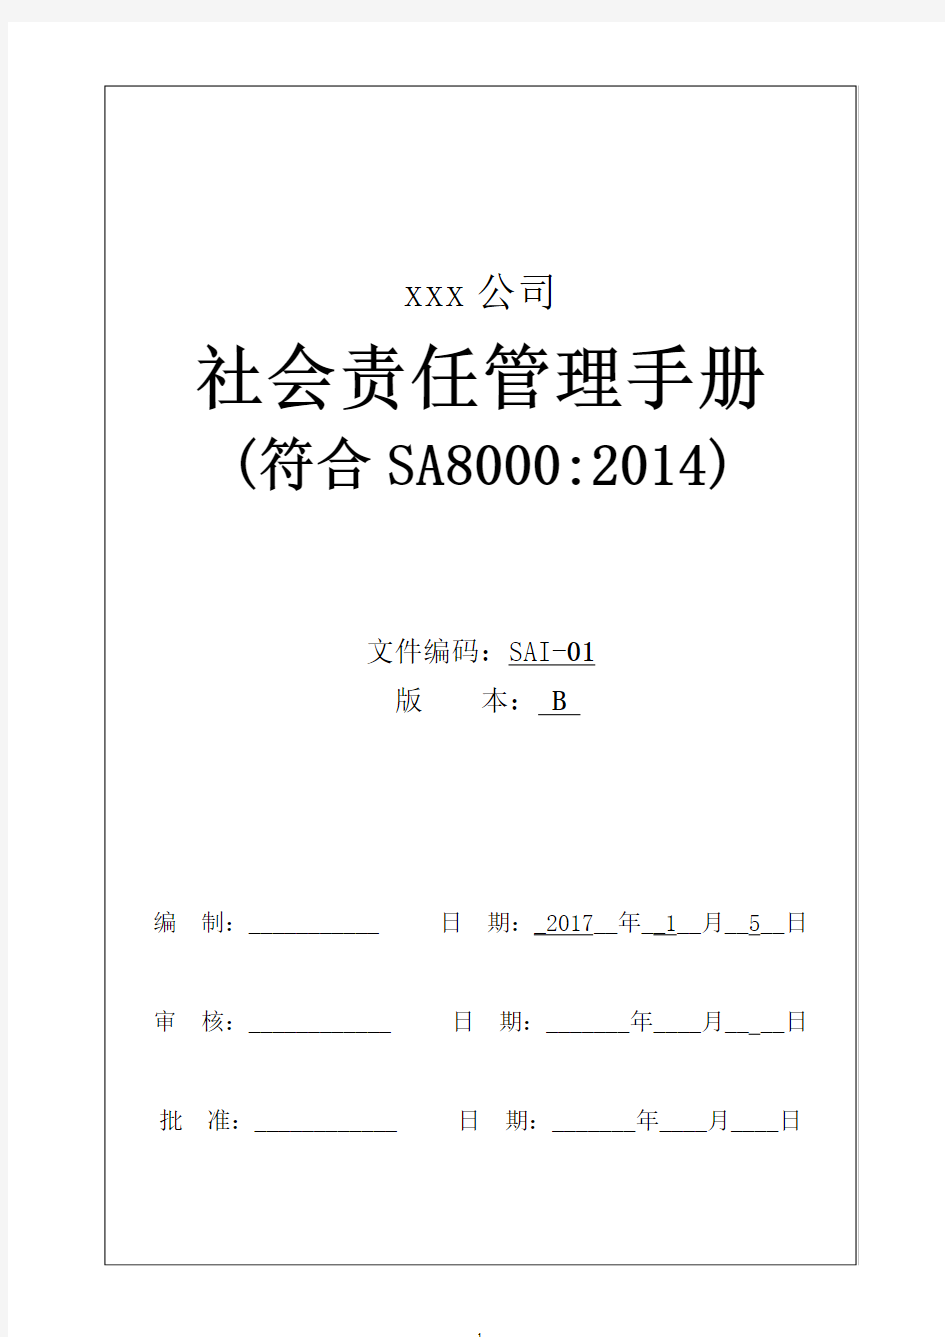 社会责任手册(SA8000-2014)